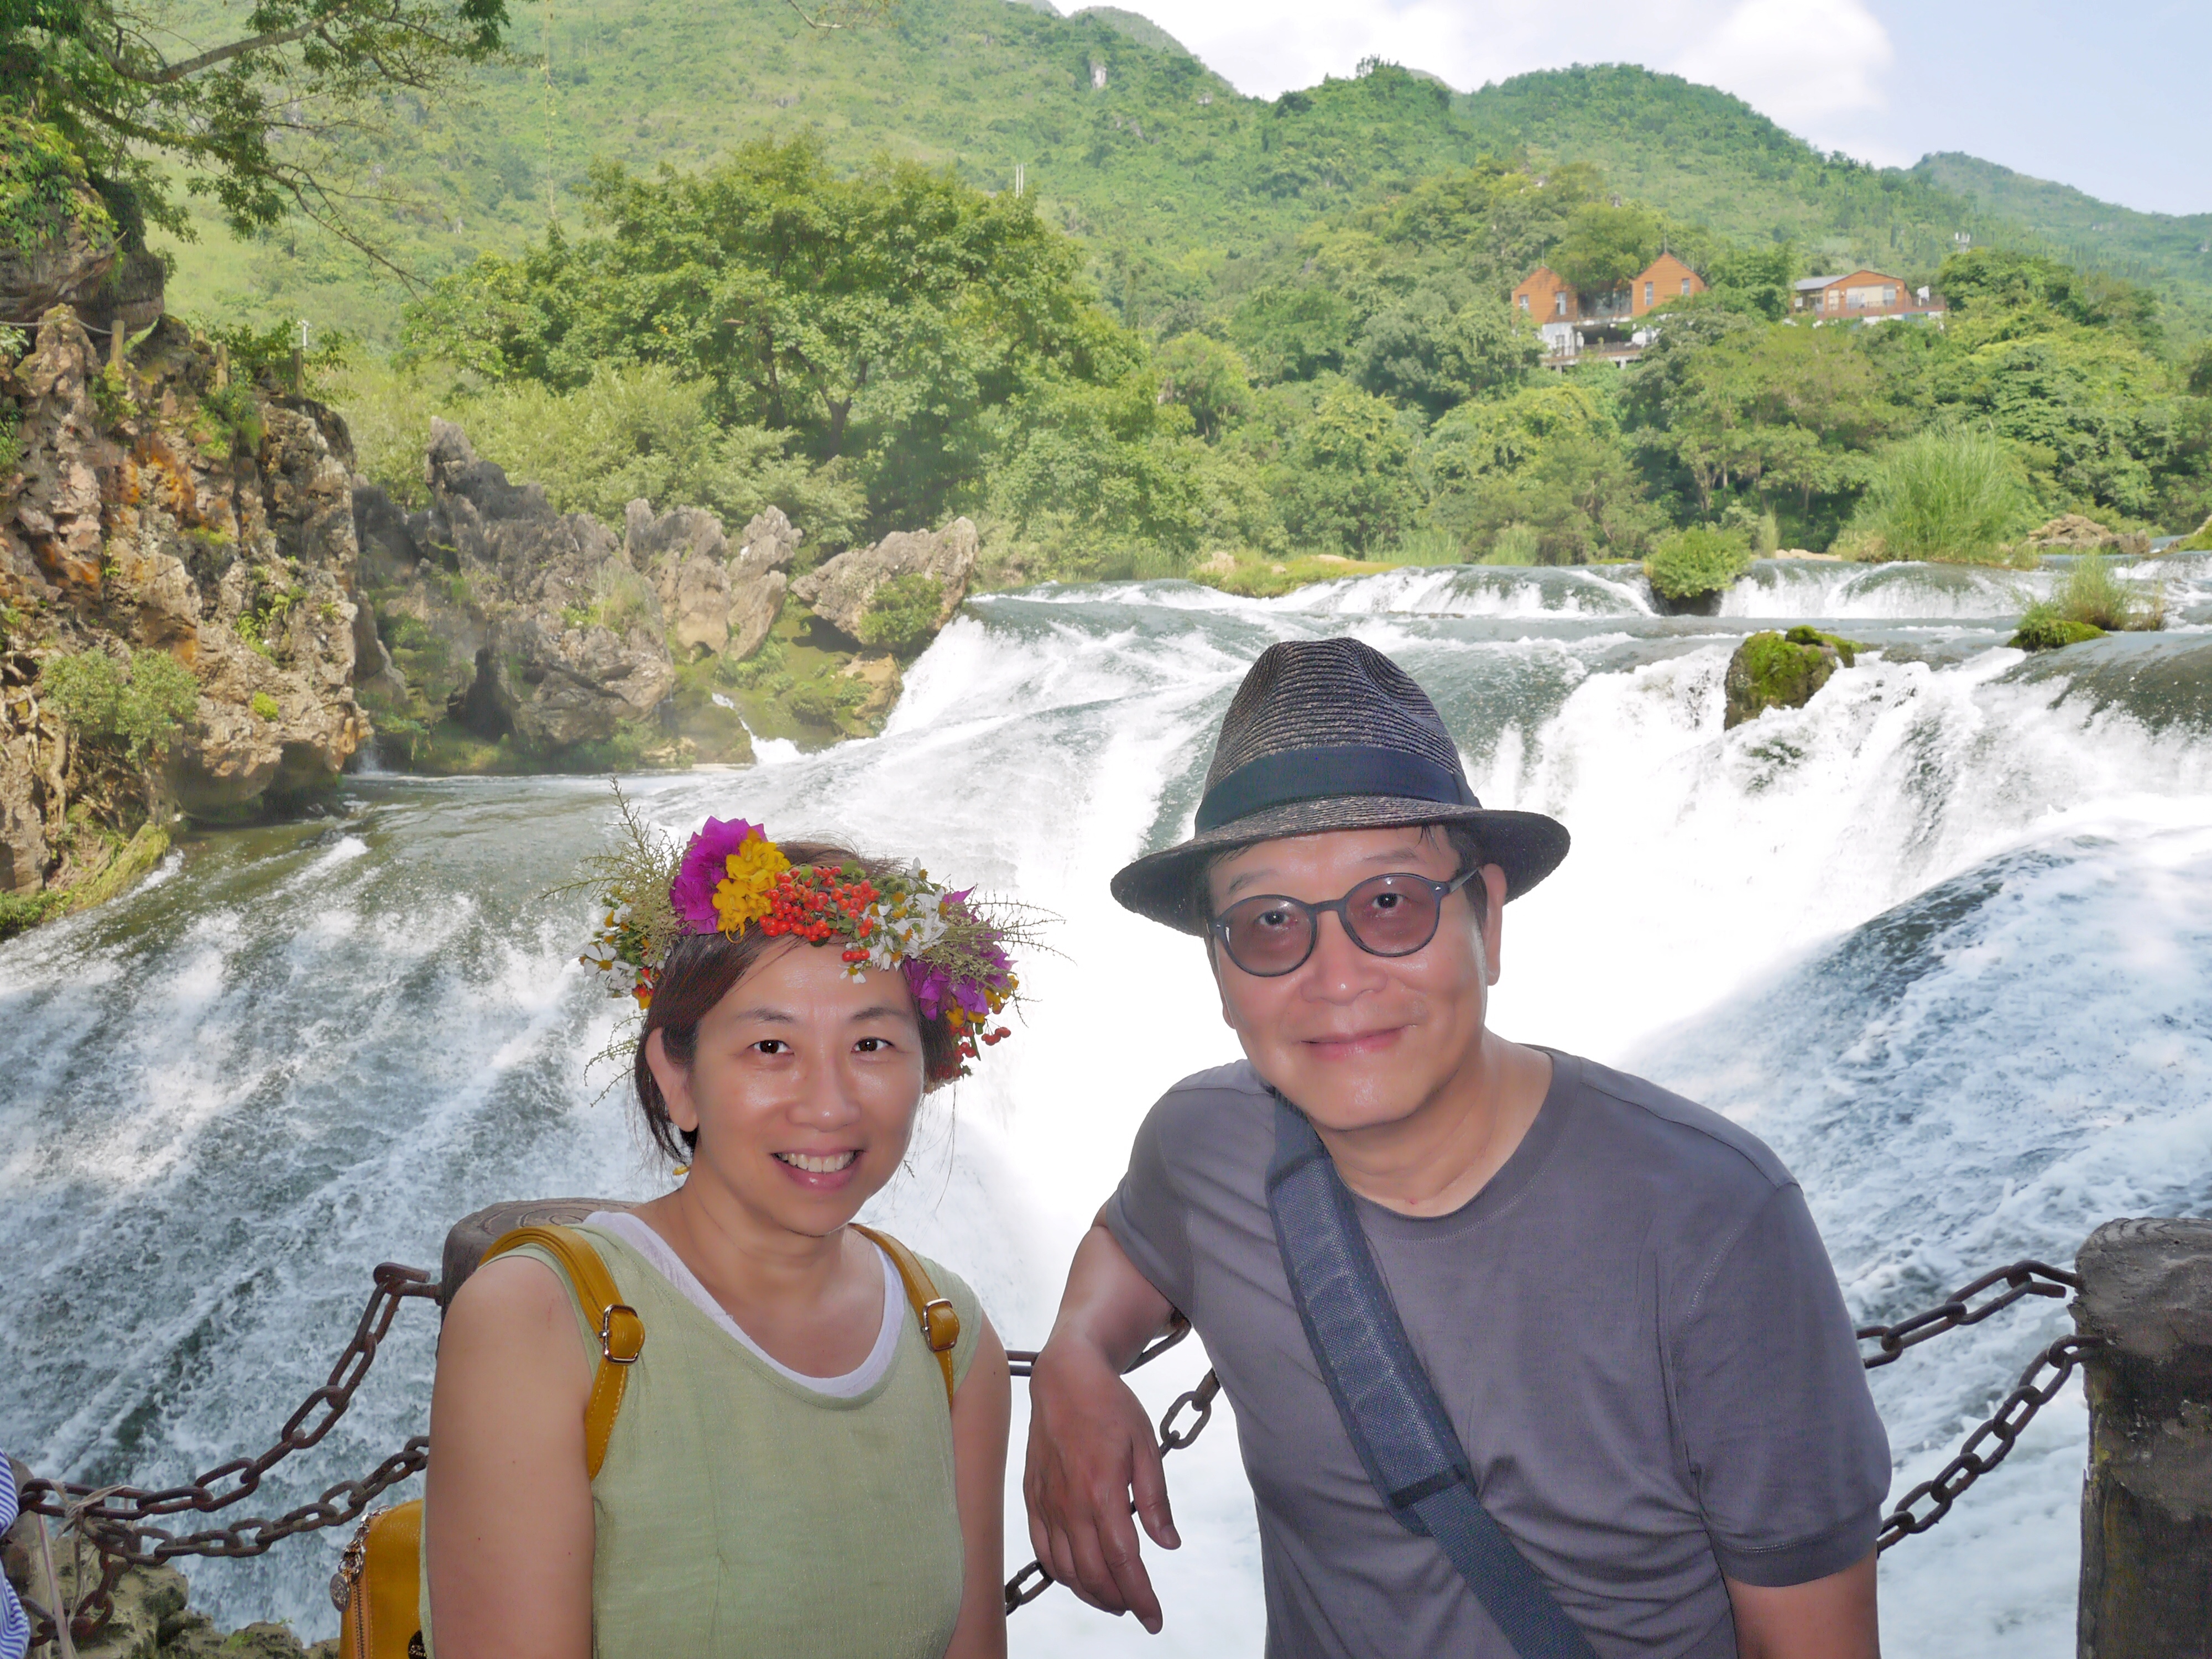 劉立達 with his wife